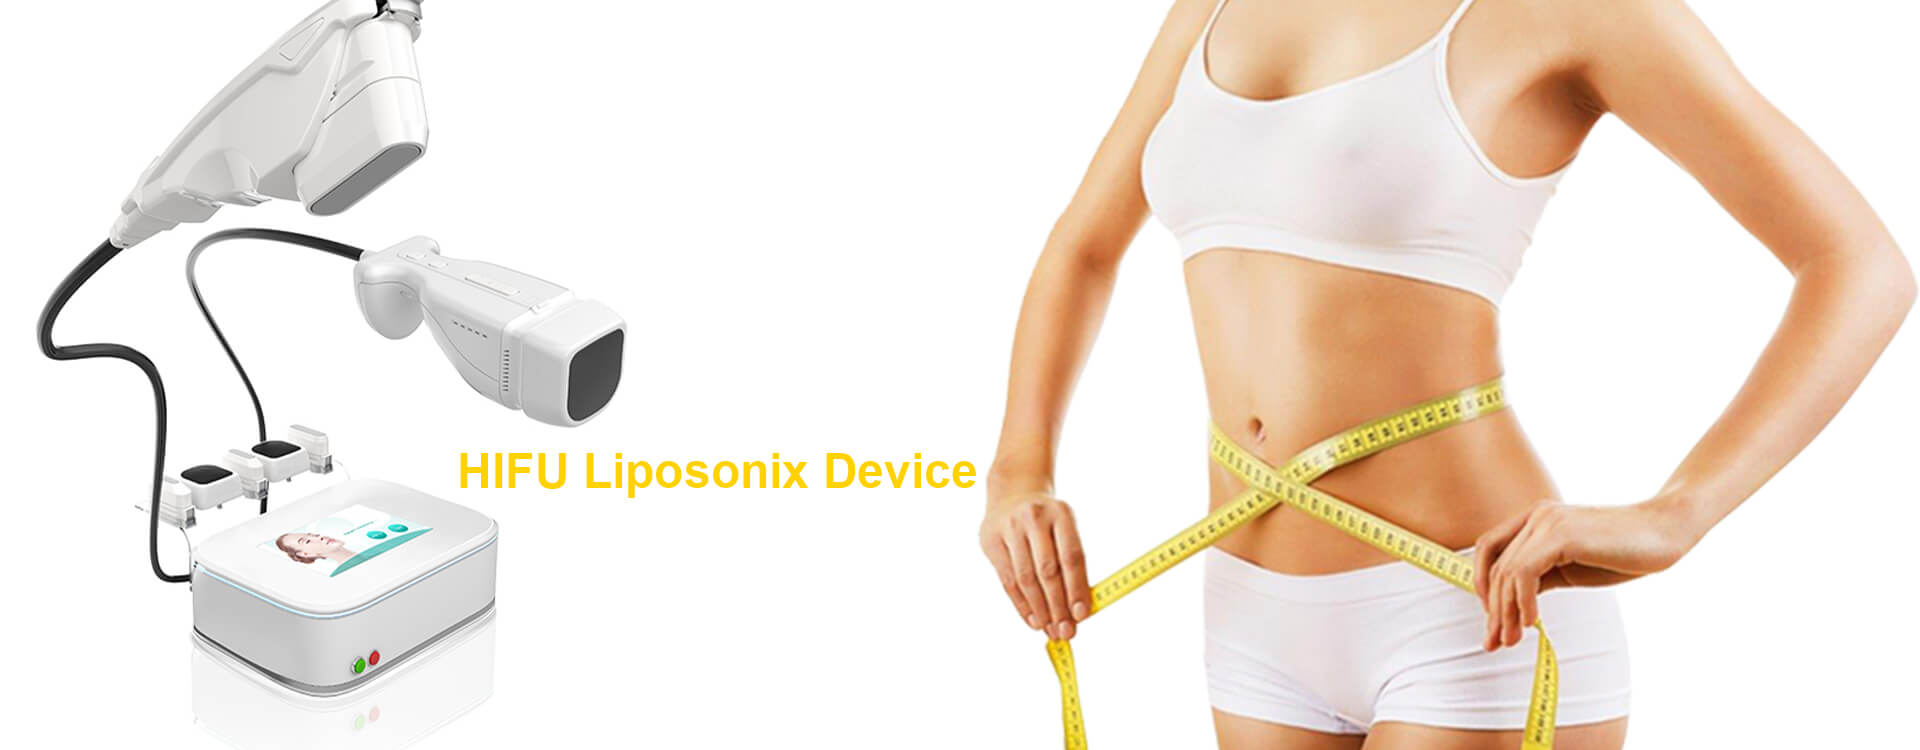 How To Operate Liposonix Of HIFU Liposonix Machine?